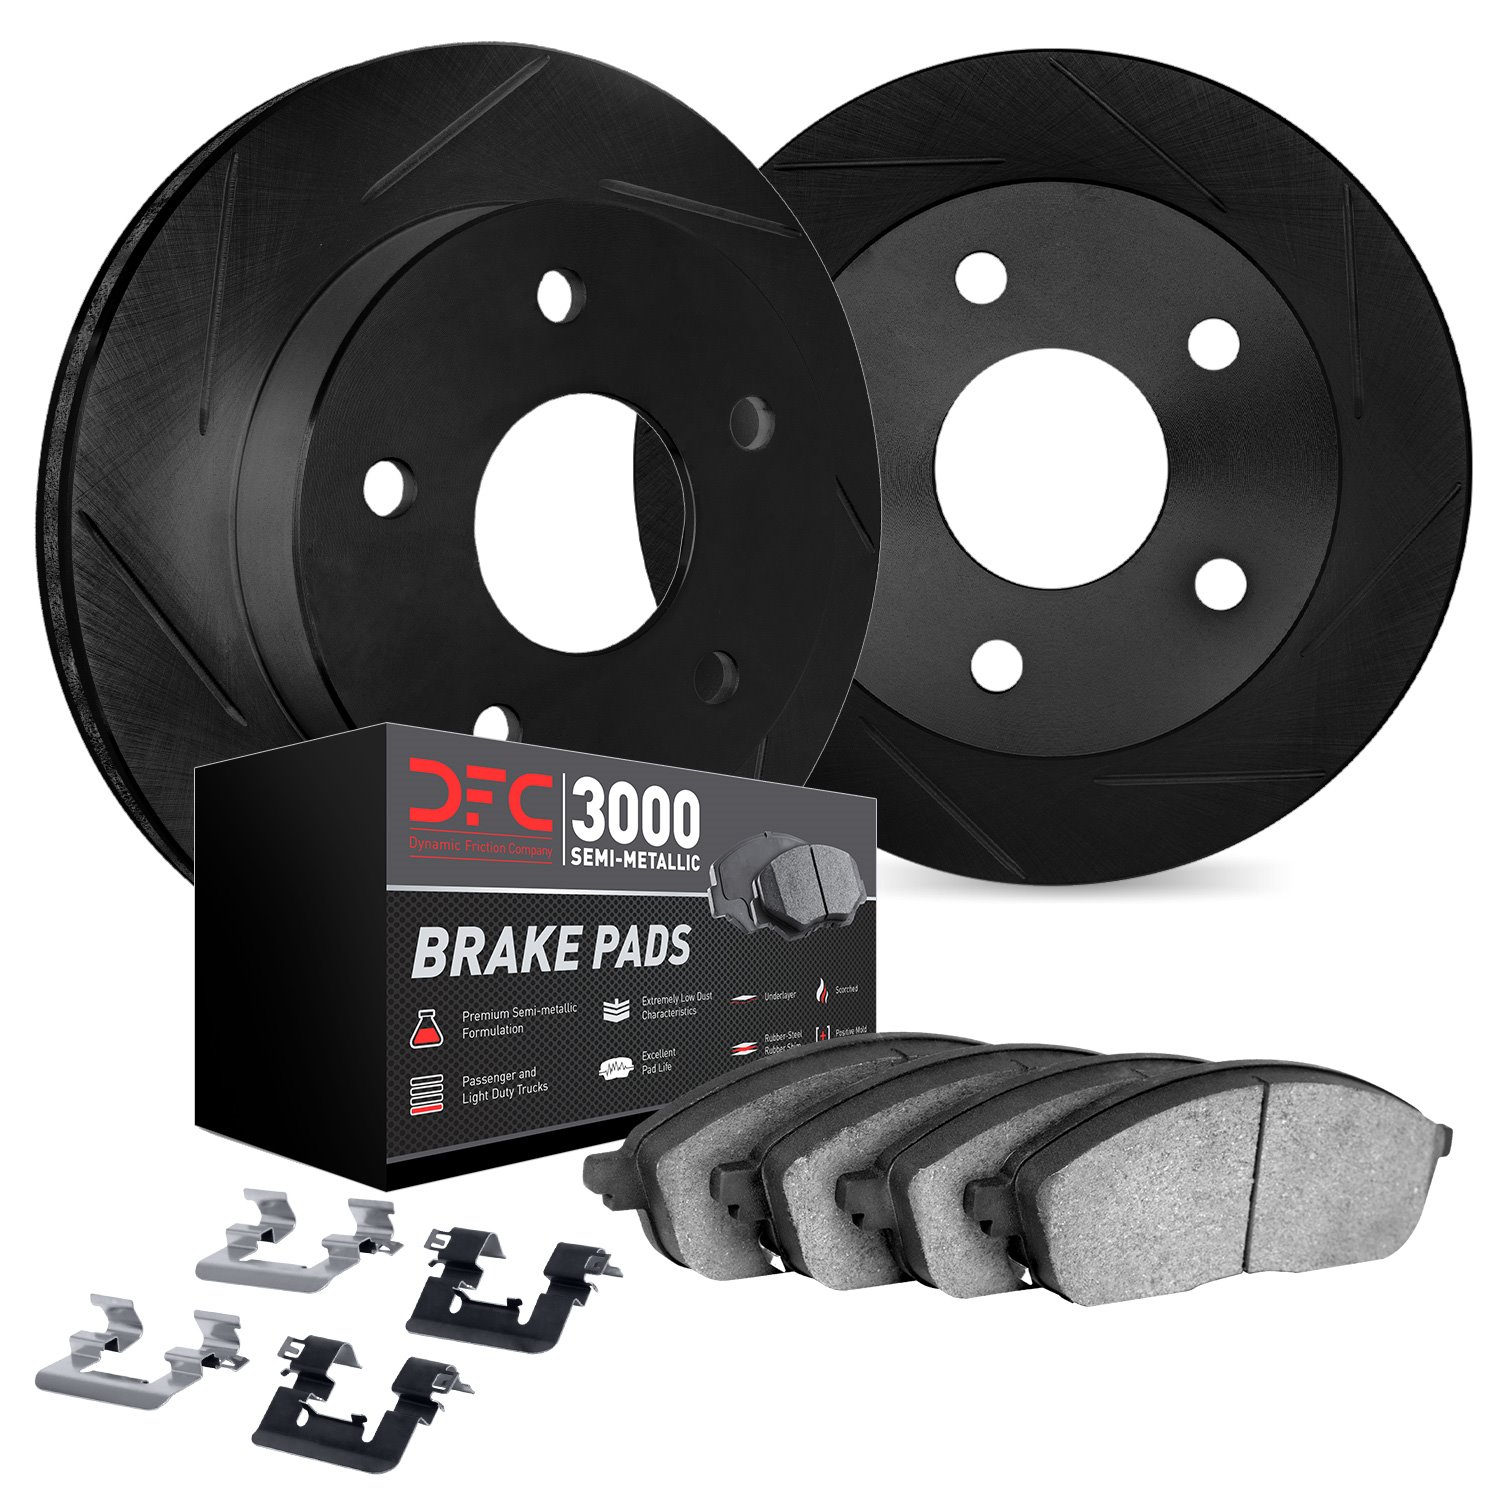 3112-01012 Slotted Brake Rotors with 3000-Series Semi-Metallic Brake Pads Kit & Hardware [Black], 2009-2017 Suzuki, Position: Re